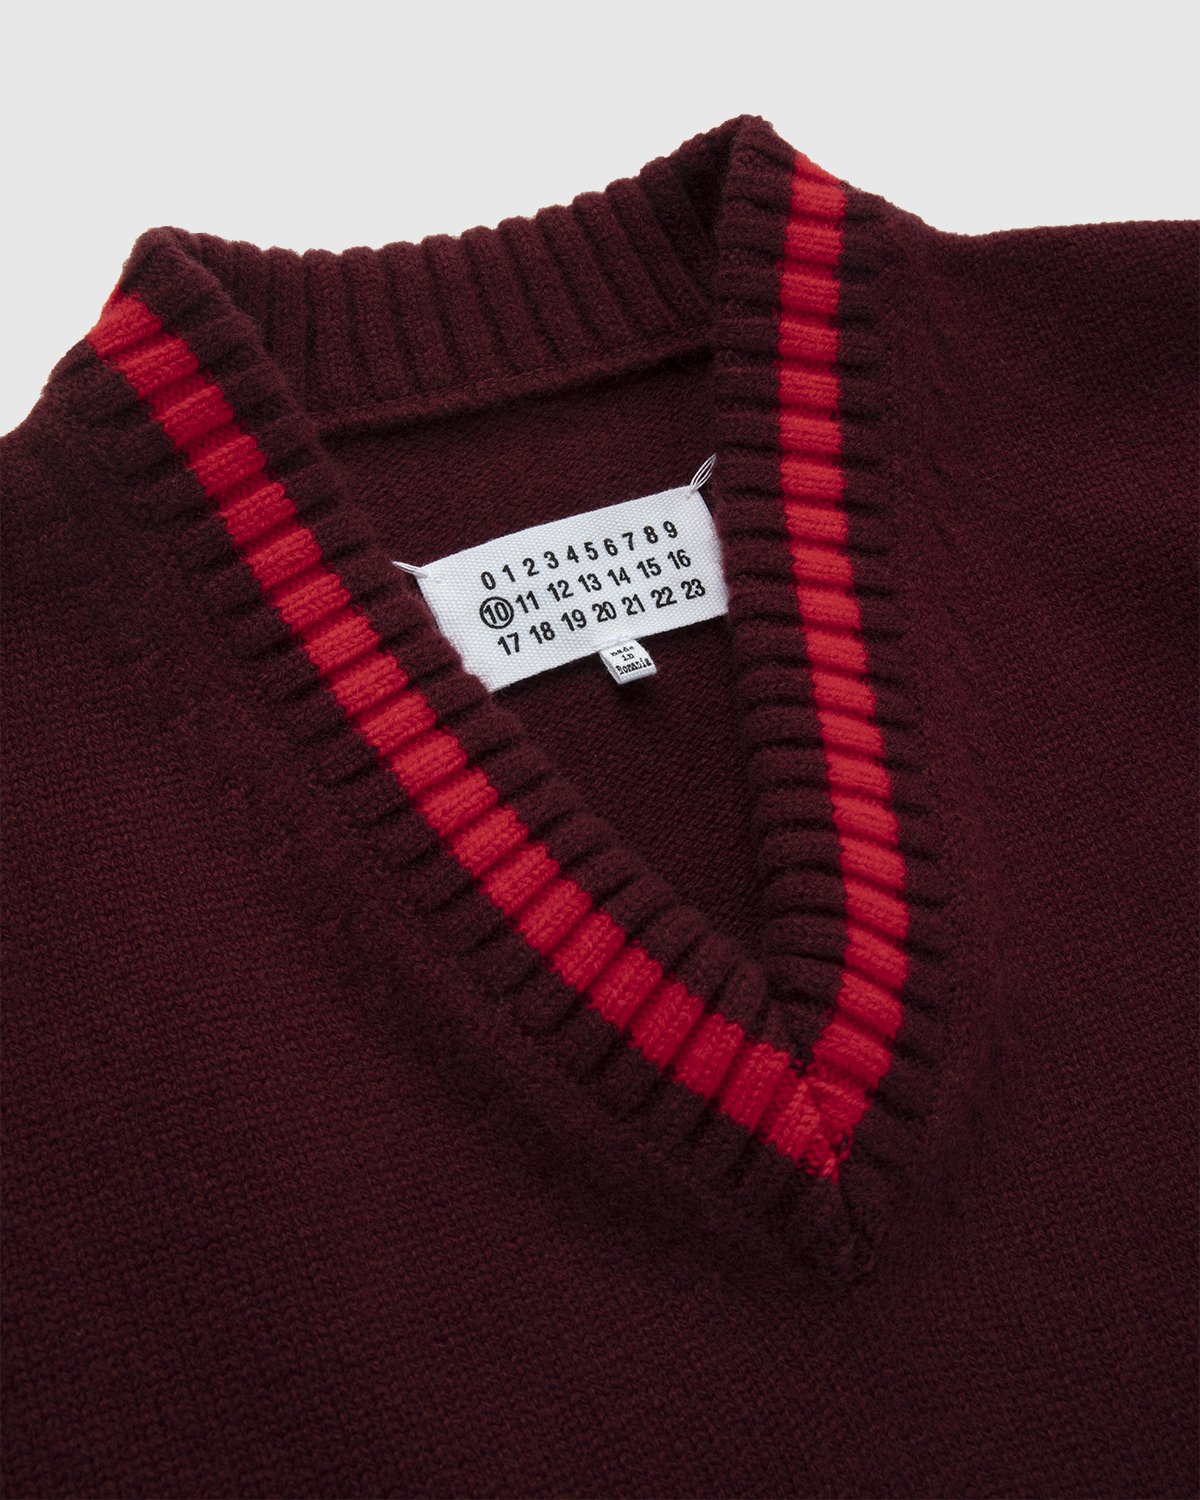 Maison Margiela - Oversized V Neck Knit Burgundy - Clothing - Red - Image 3